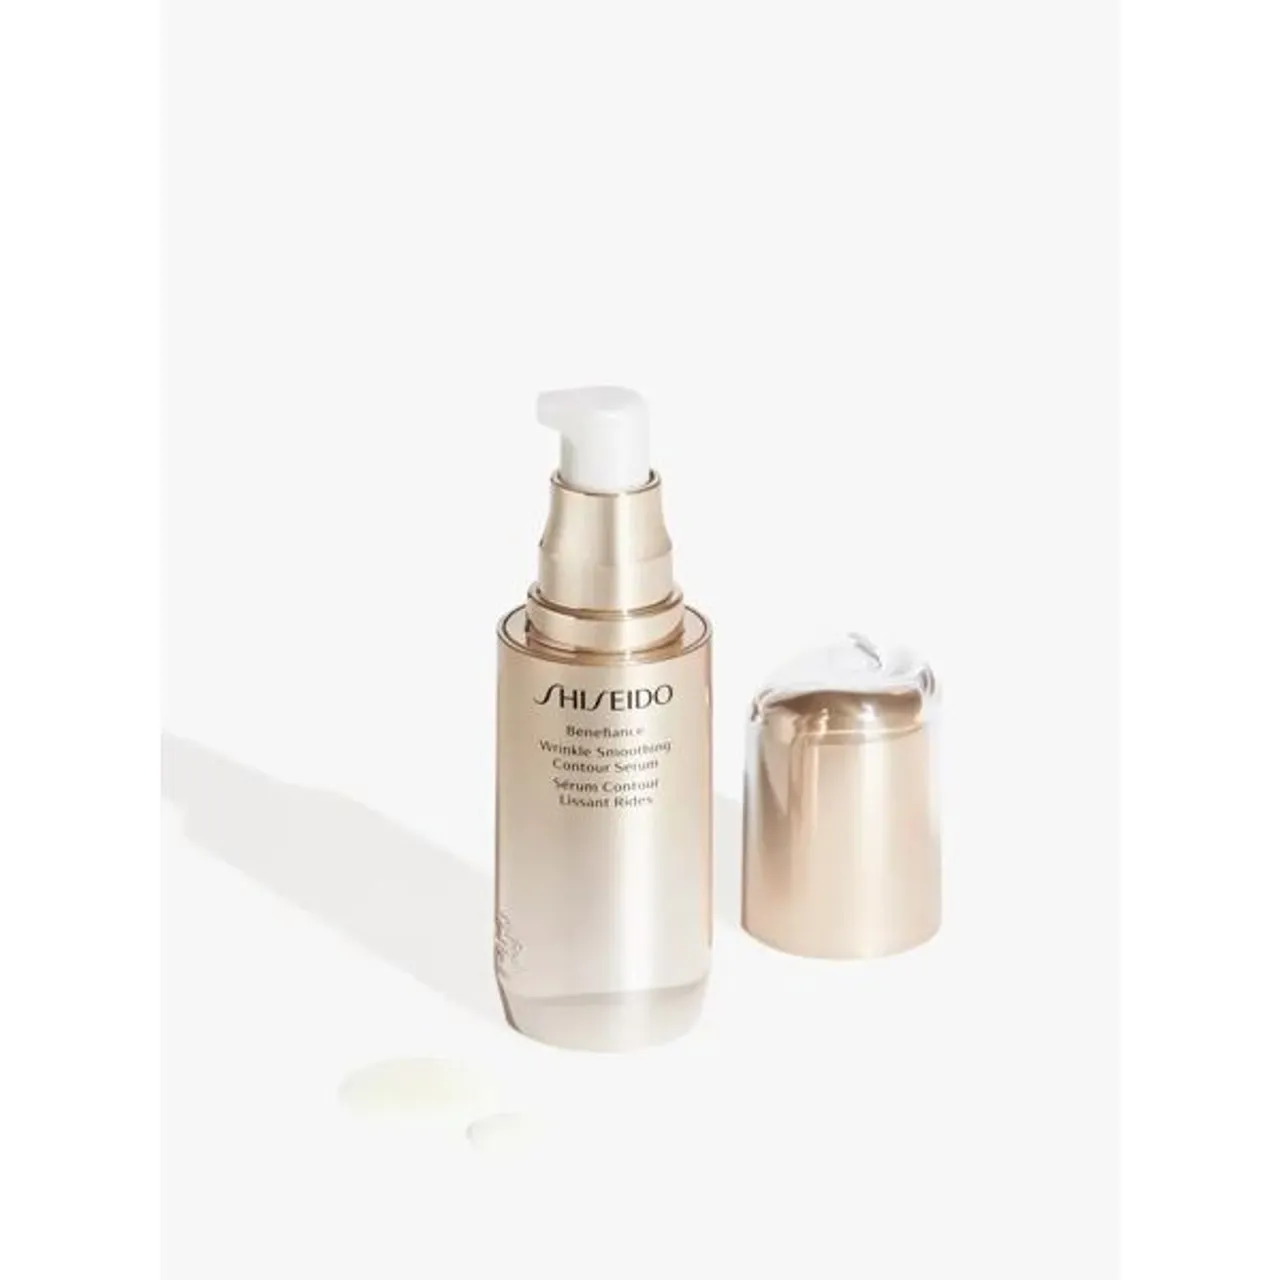 Shiseido Benefiance Wrinkle Smoothing Contour Serum, 30ml - Unisex - Size: 30ml